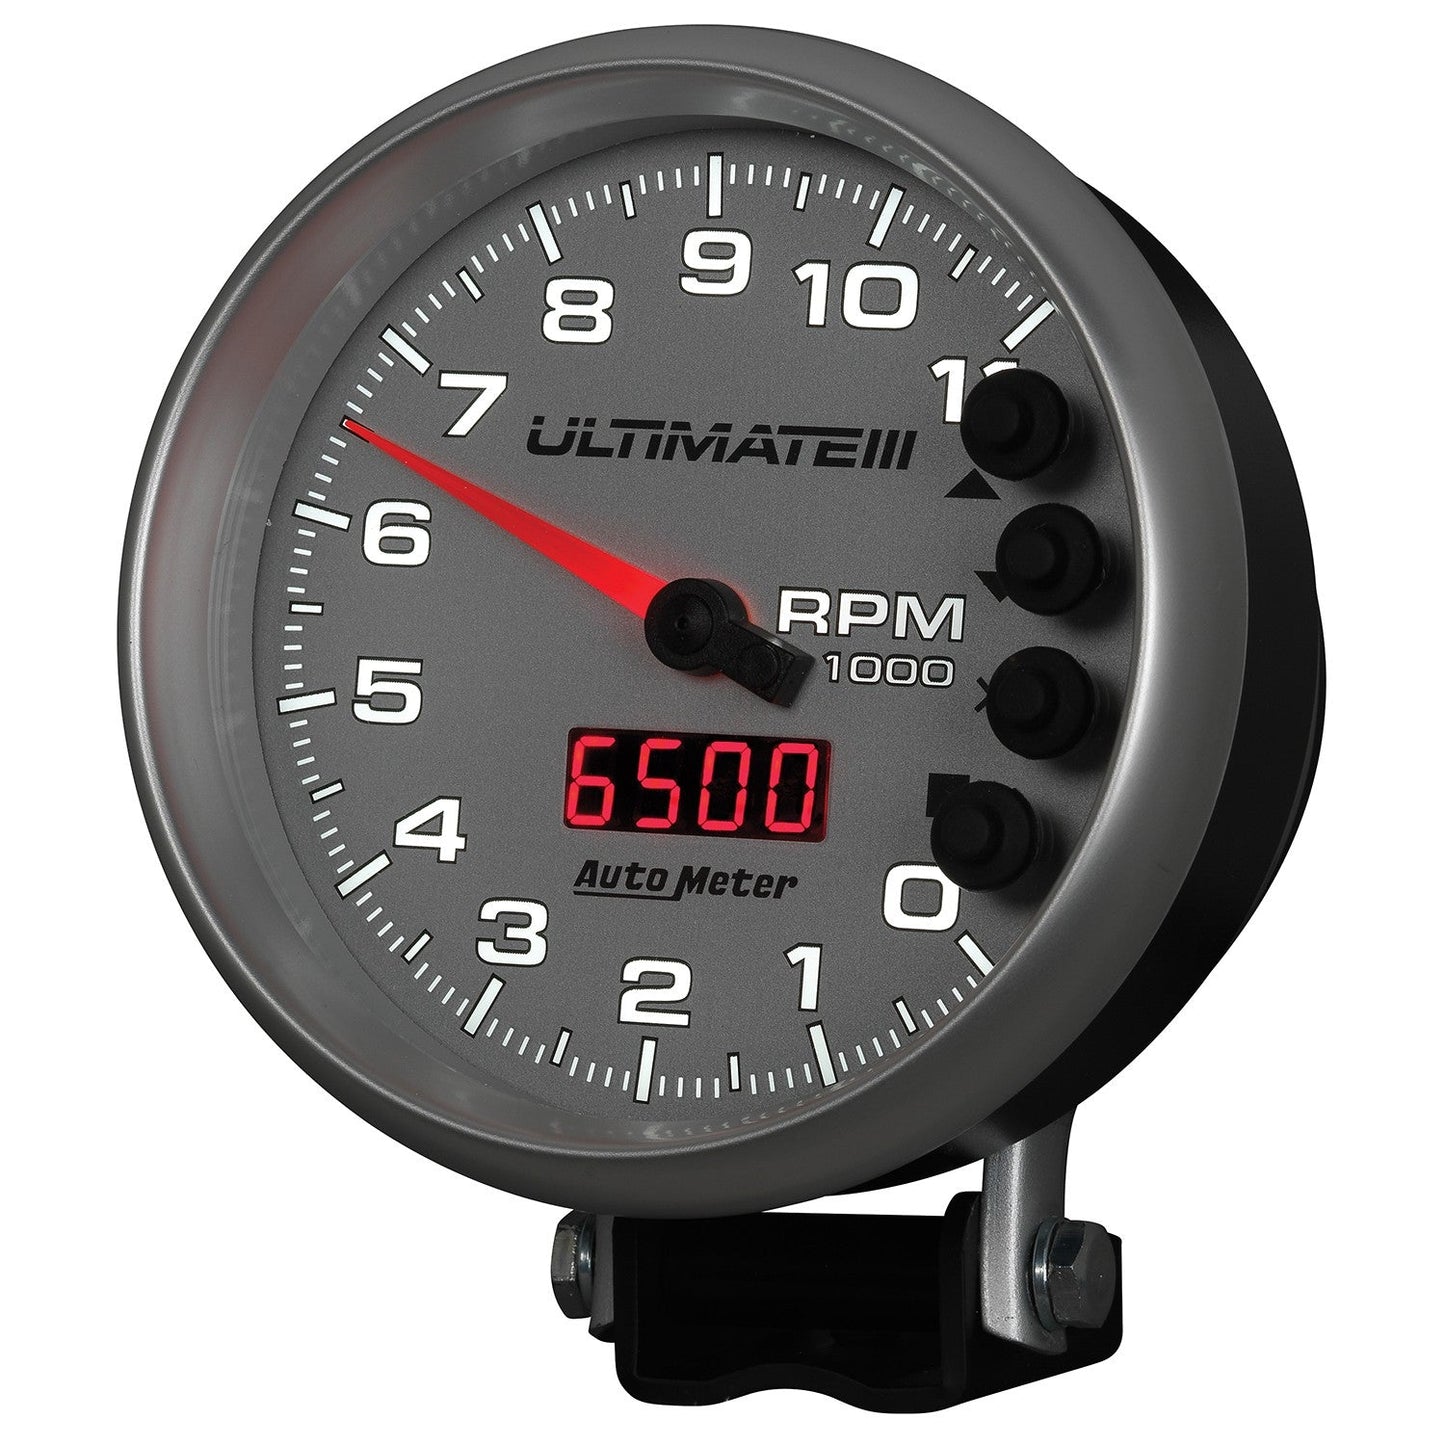 AutoMeter - TACÓMETRO DE 5", 0-11 000 RPM, PEDESTAL, REPRODUCCIÓN ULTIMATE III, PLATA (6886)